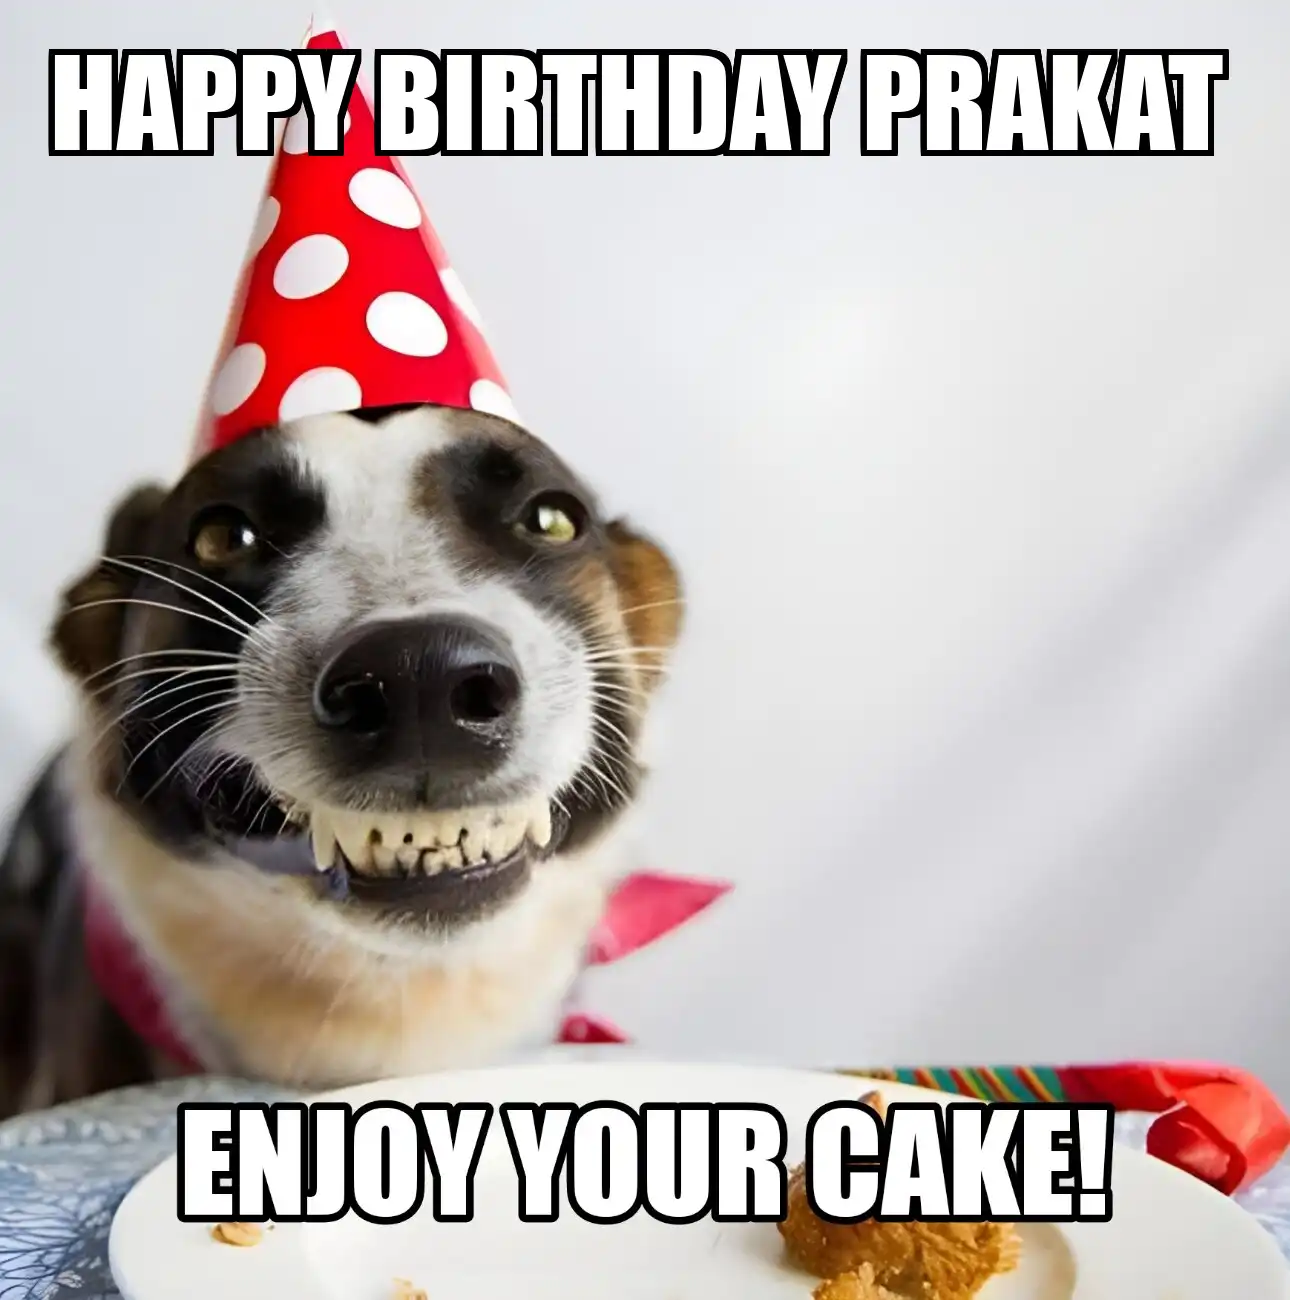 Happy Birthday Prakat Enjoy Your Cake Dog Meme